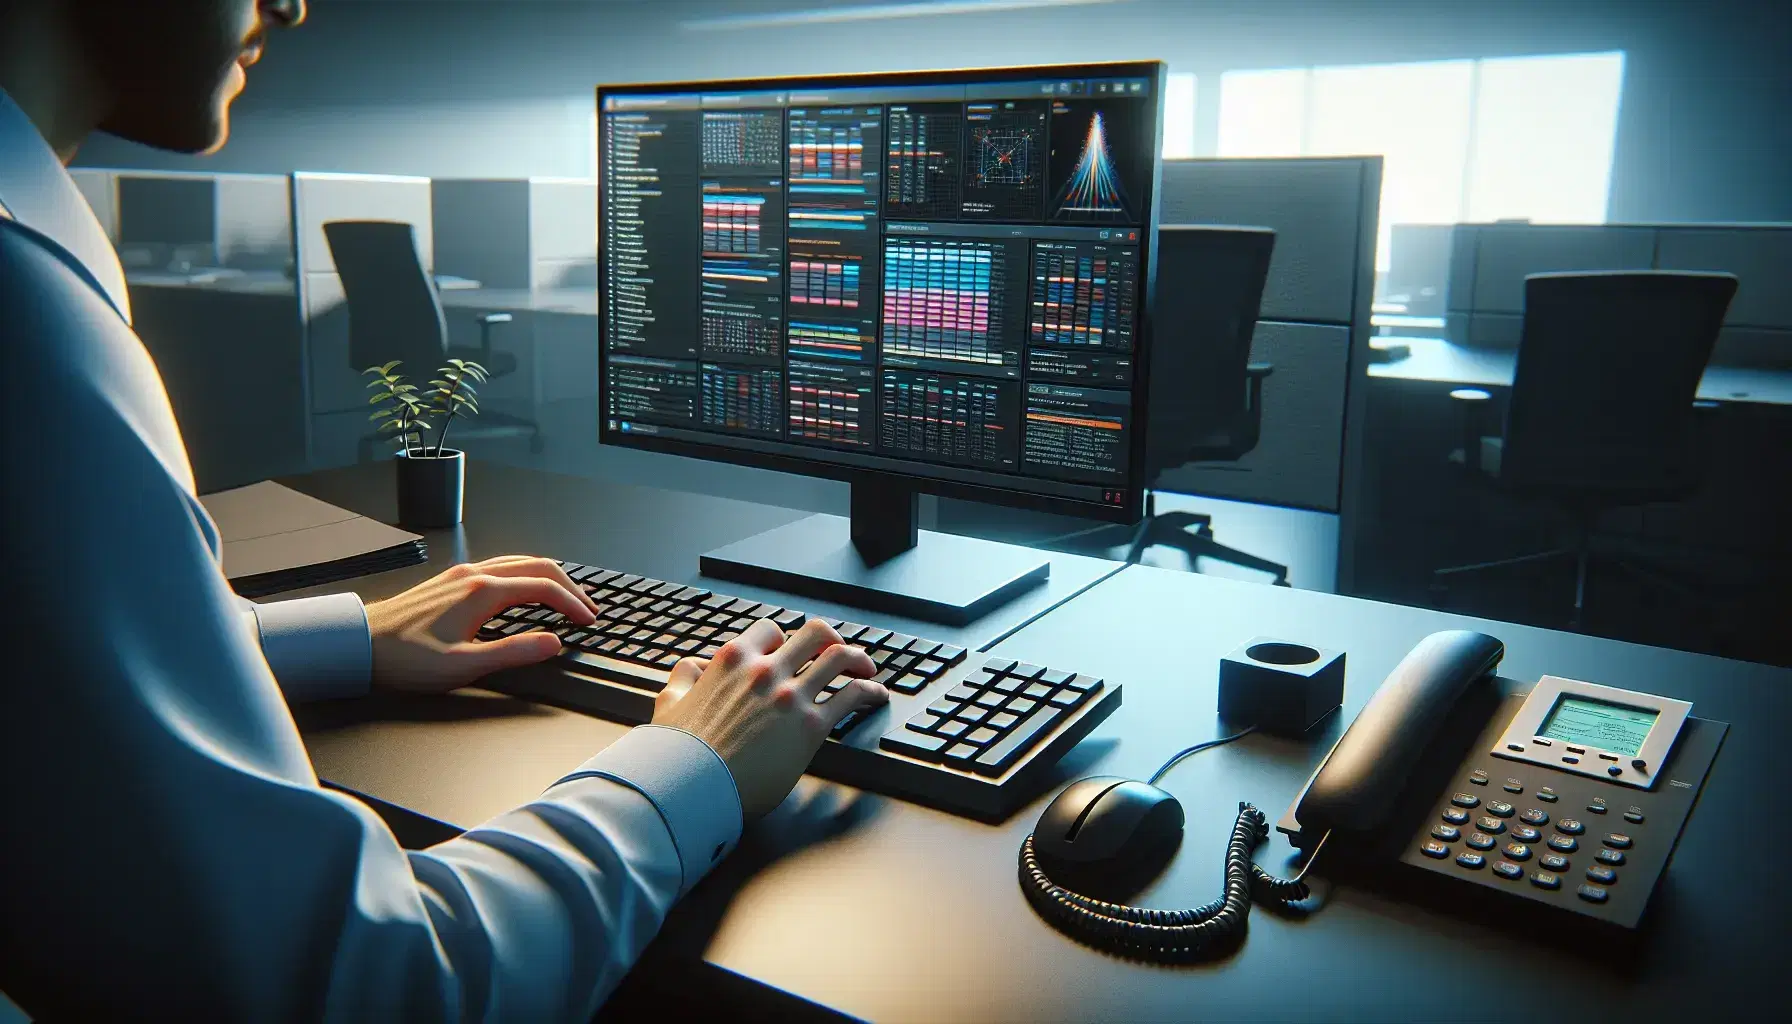 Manos sobre teclado de computadora en oficina con monitor, teléfono y cubículos al fondo, ambiente de trabajo corporativo.